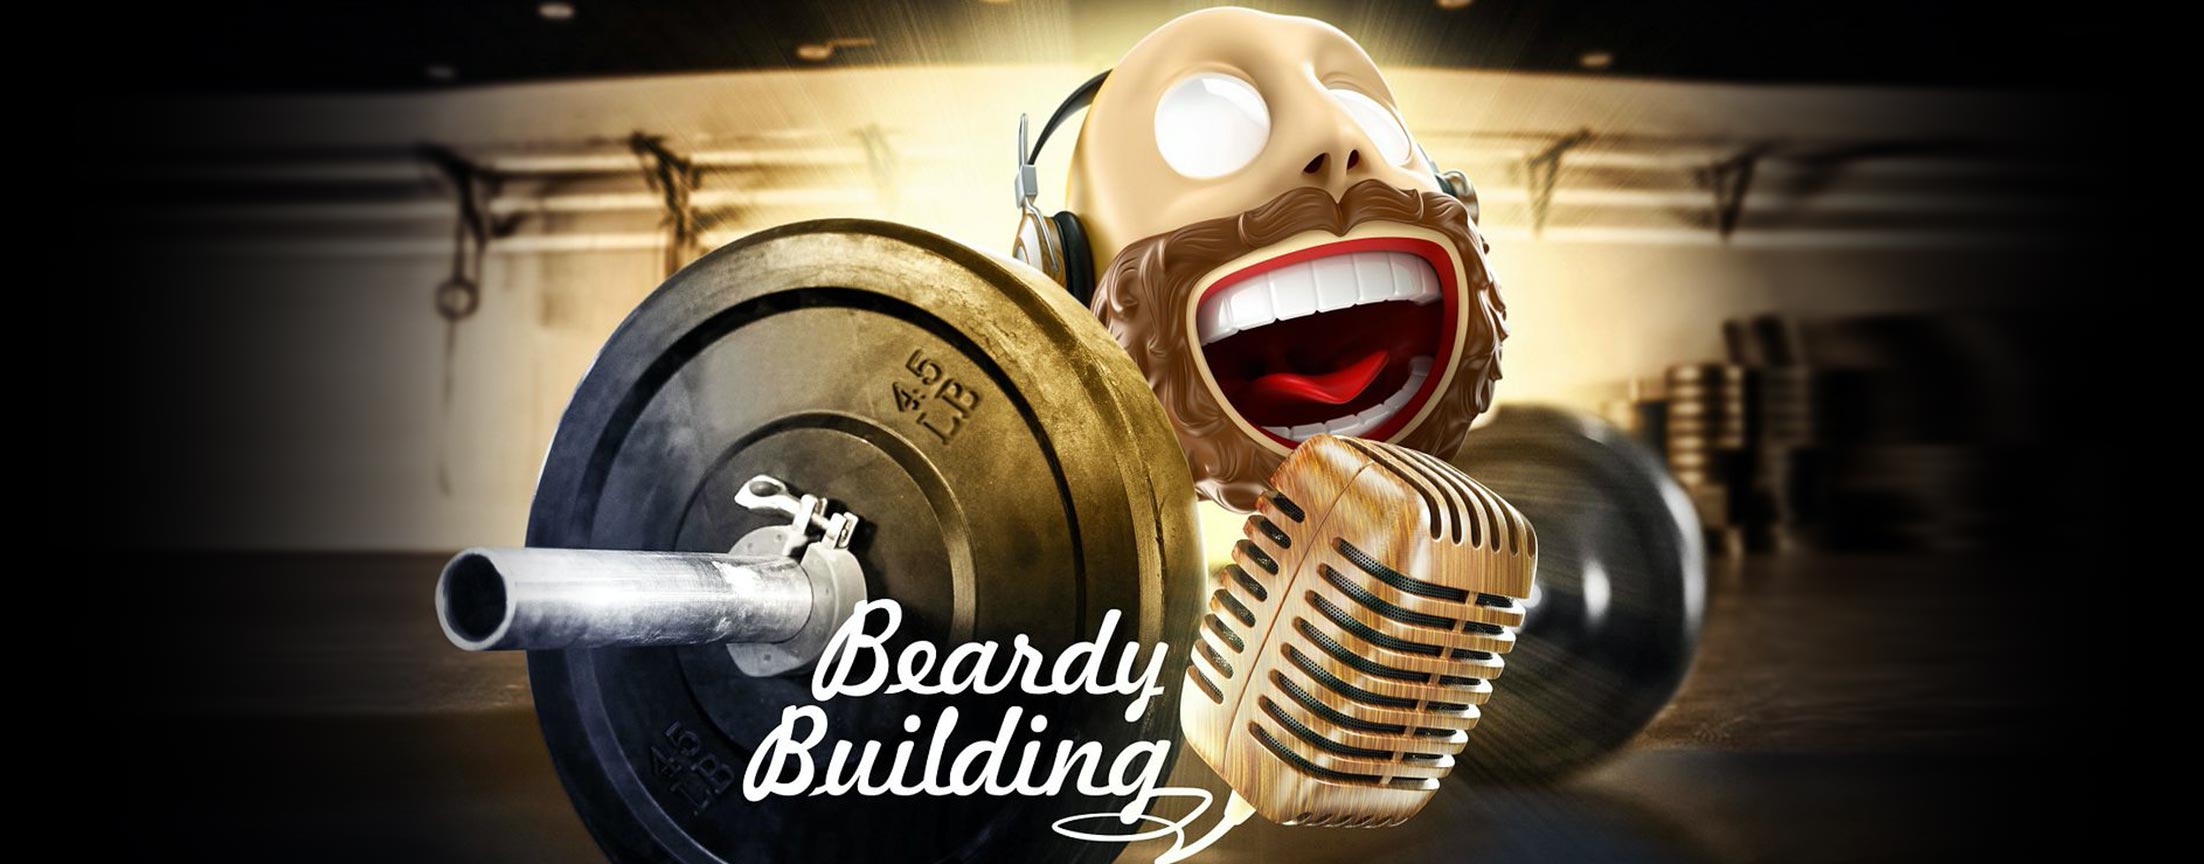 Beardybuilding